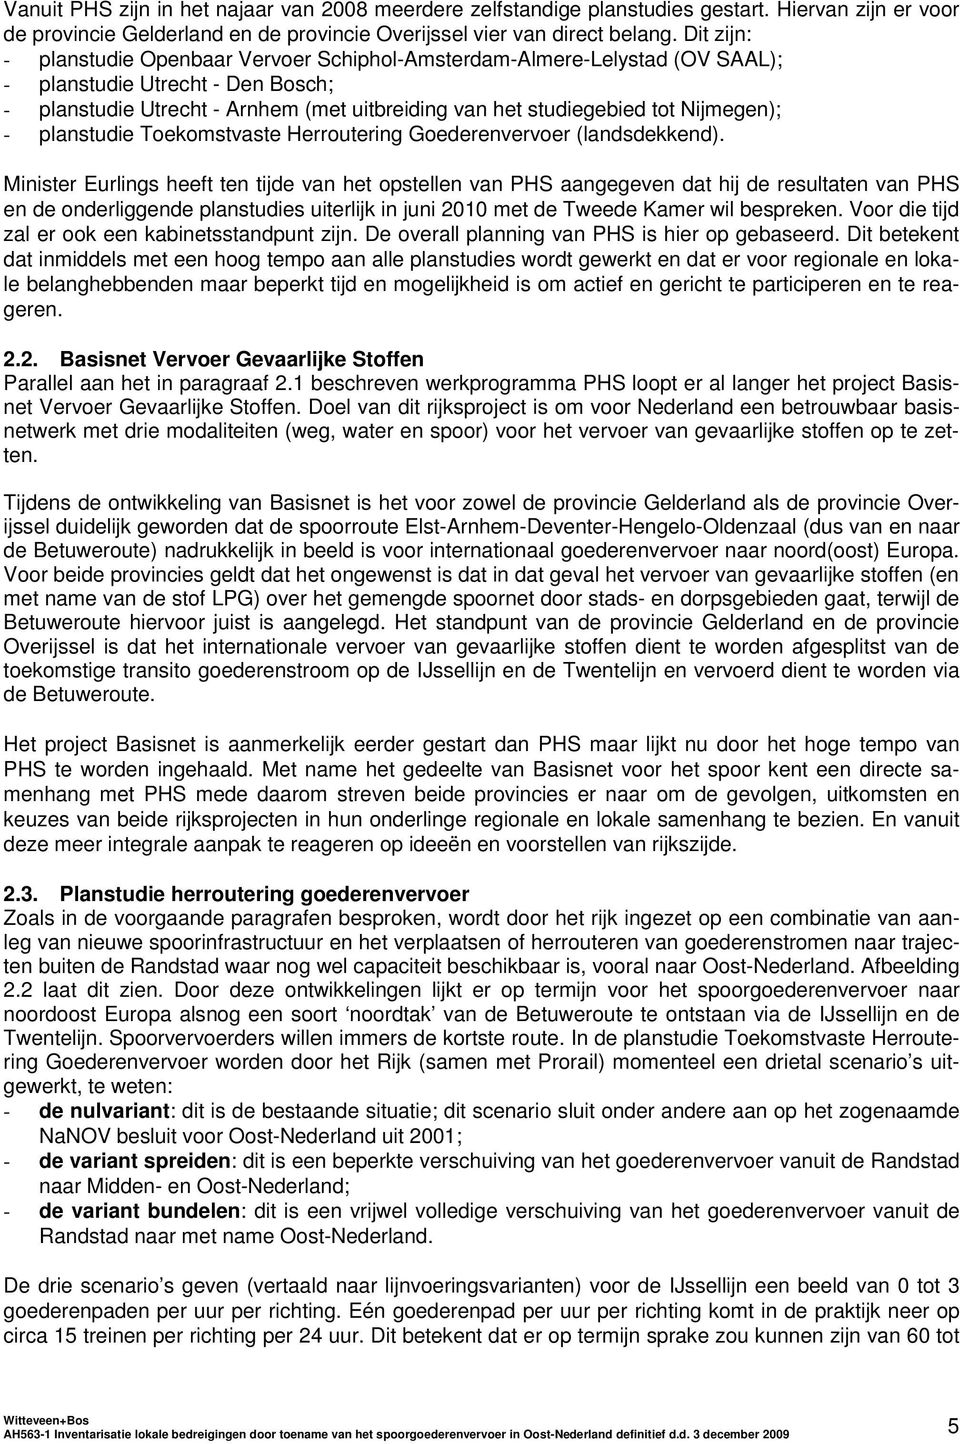 Nijmegen); - planstudie Toekomstvaste Herroutering Goederenvervoer (landsdekkend).